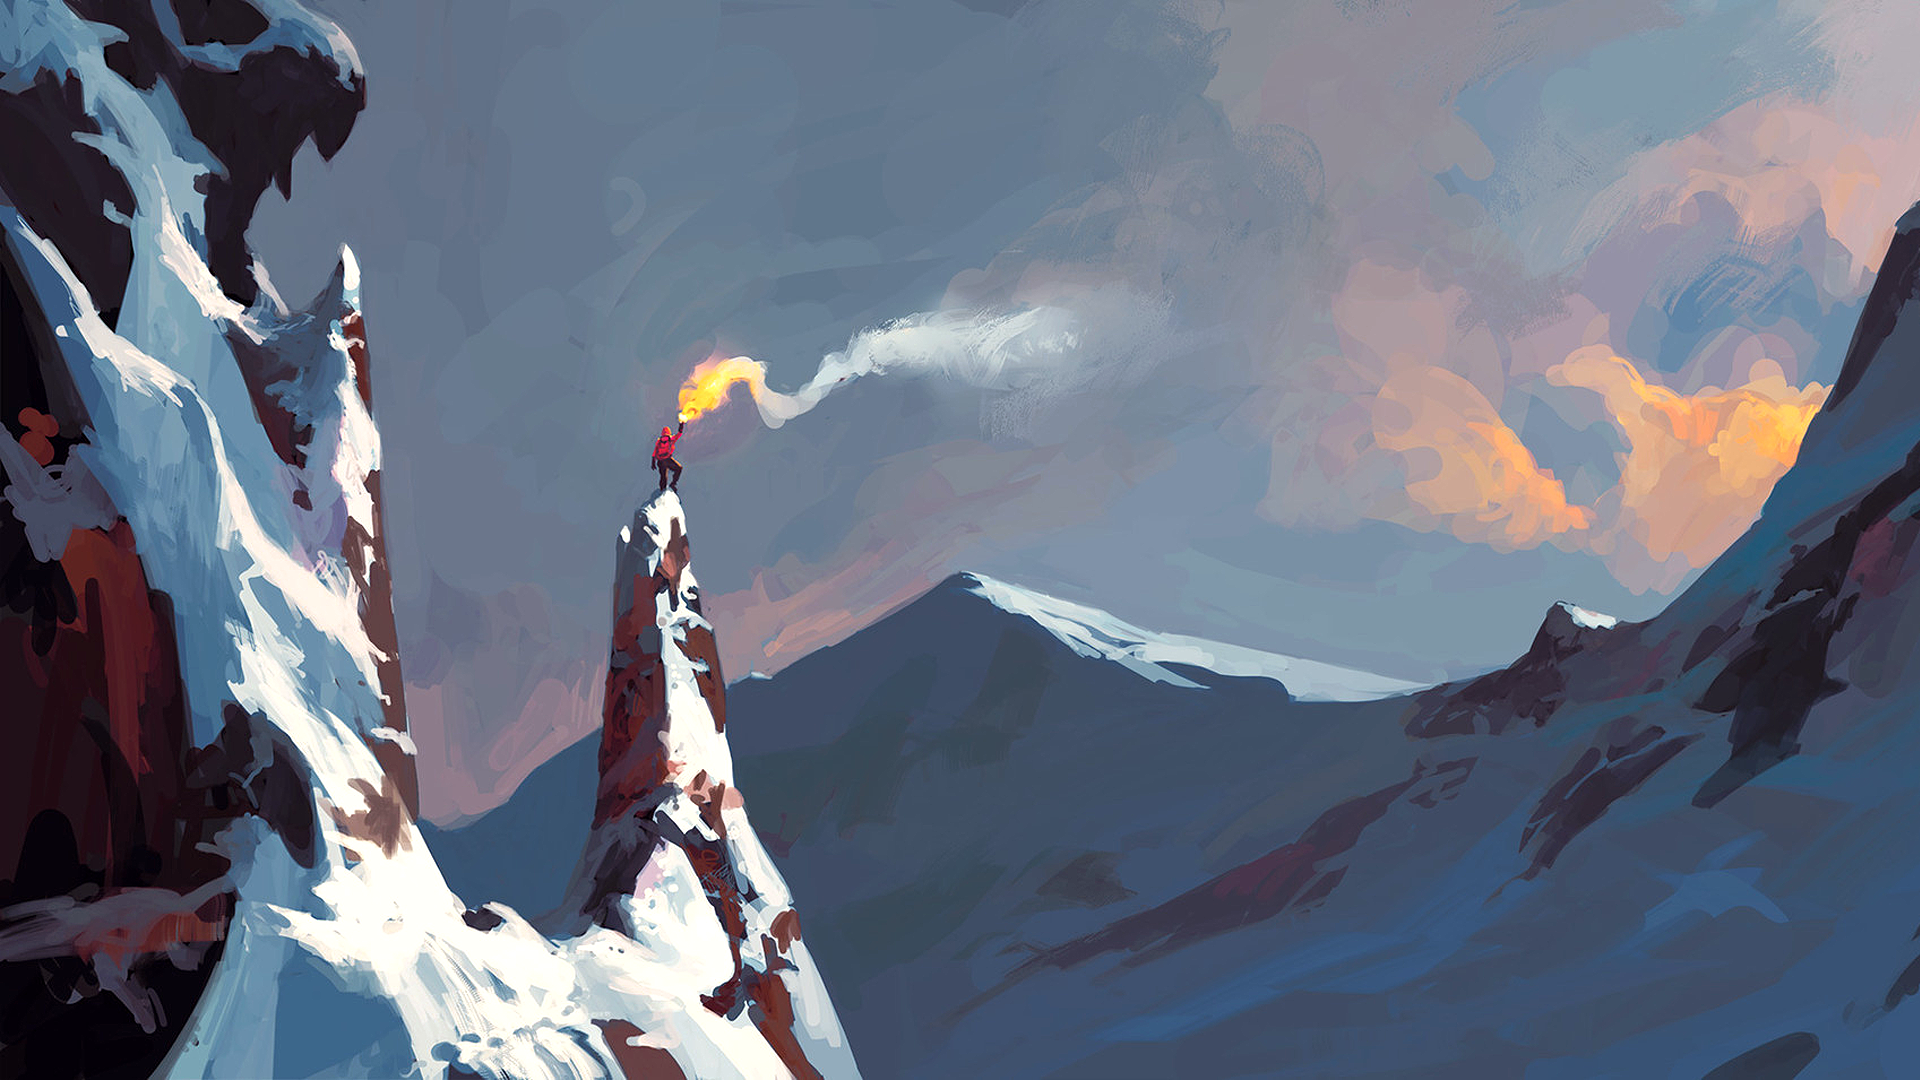 Andreas Rocha Artwork Digital Art Mountains Landscape Fire Alone Standing Climbing 1920x1080